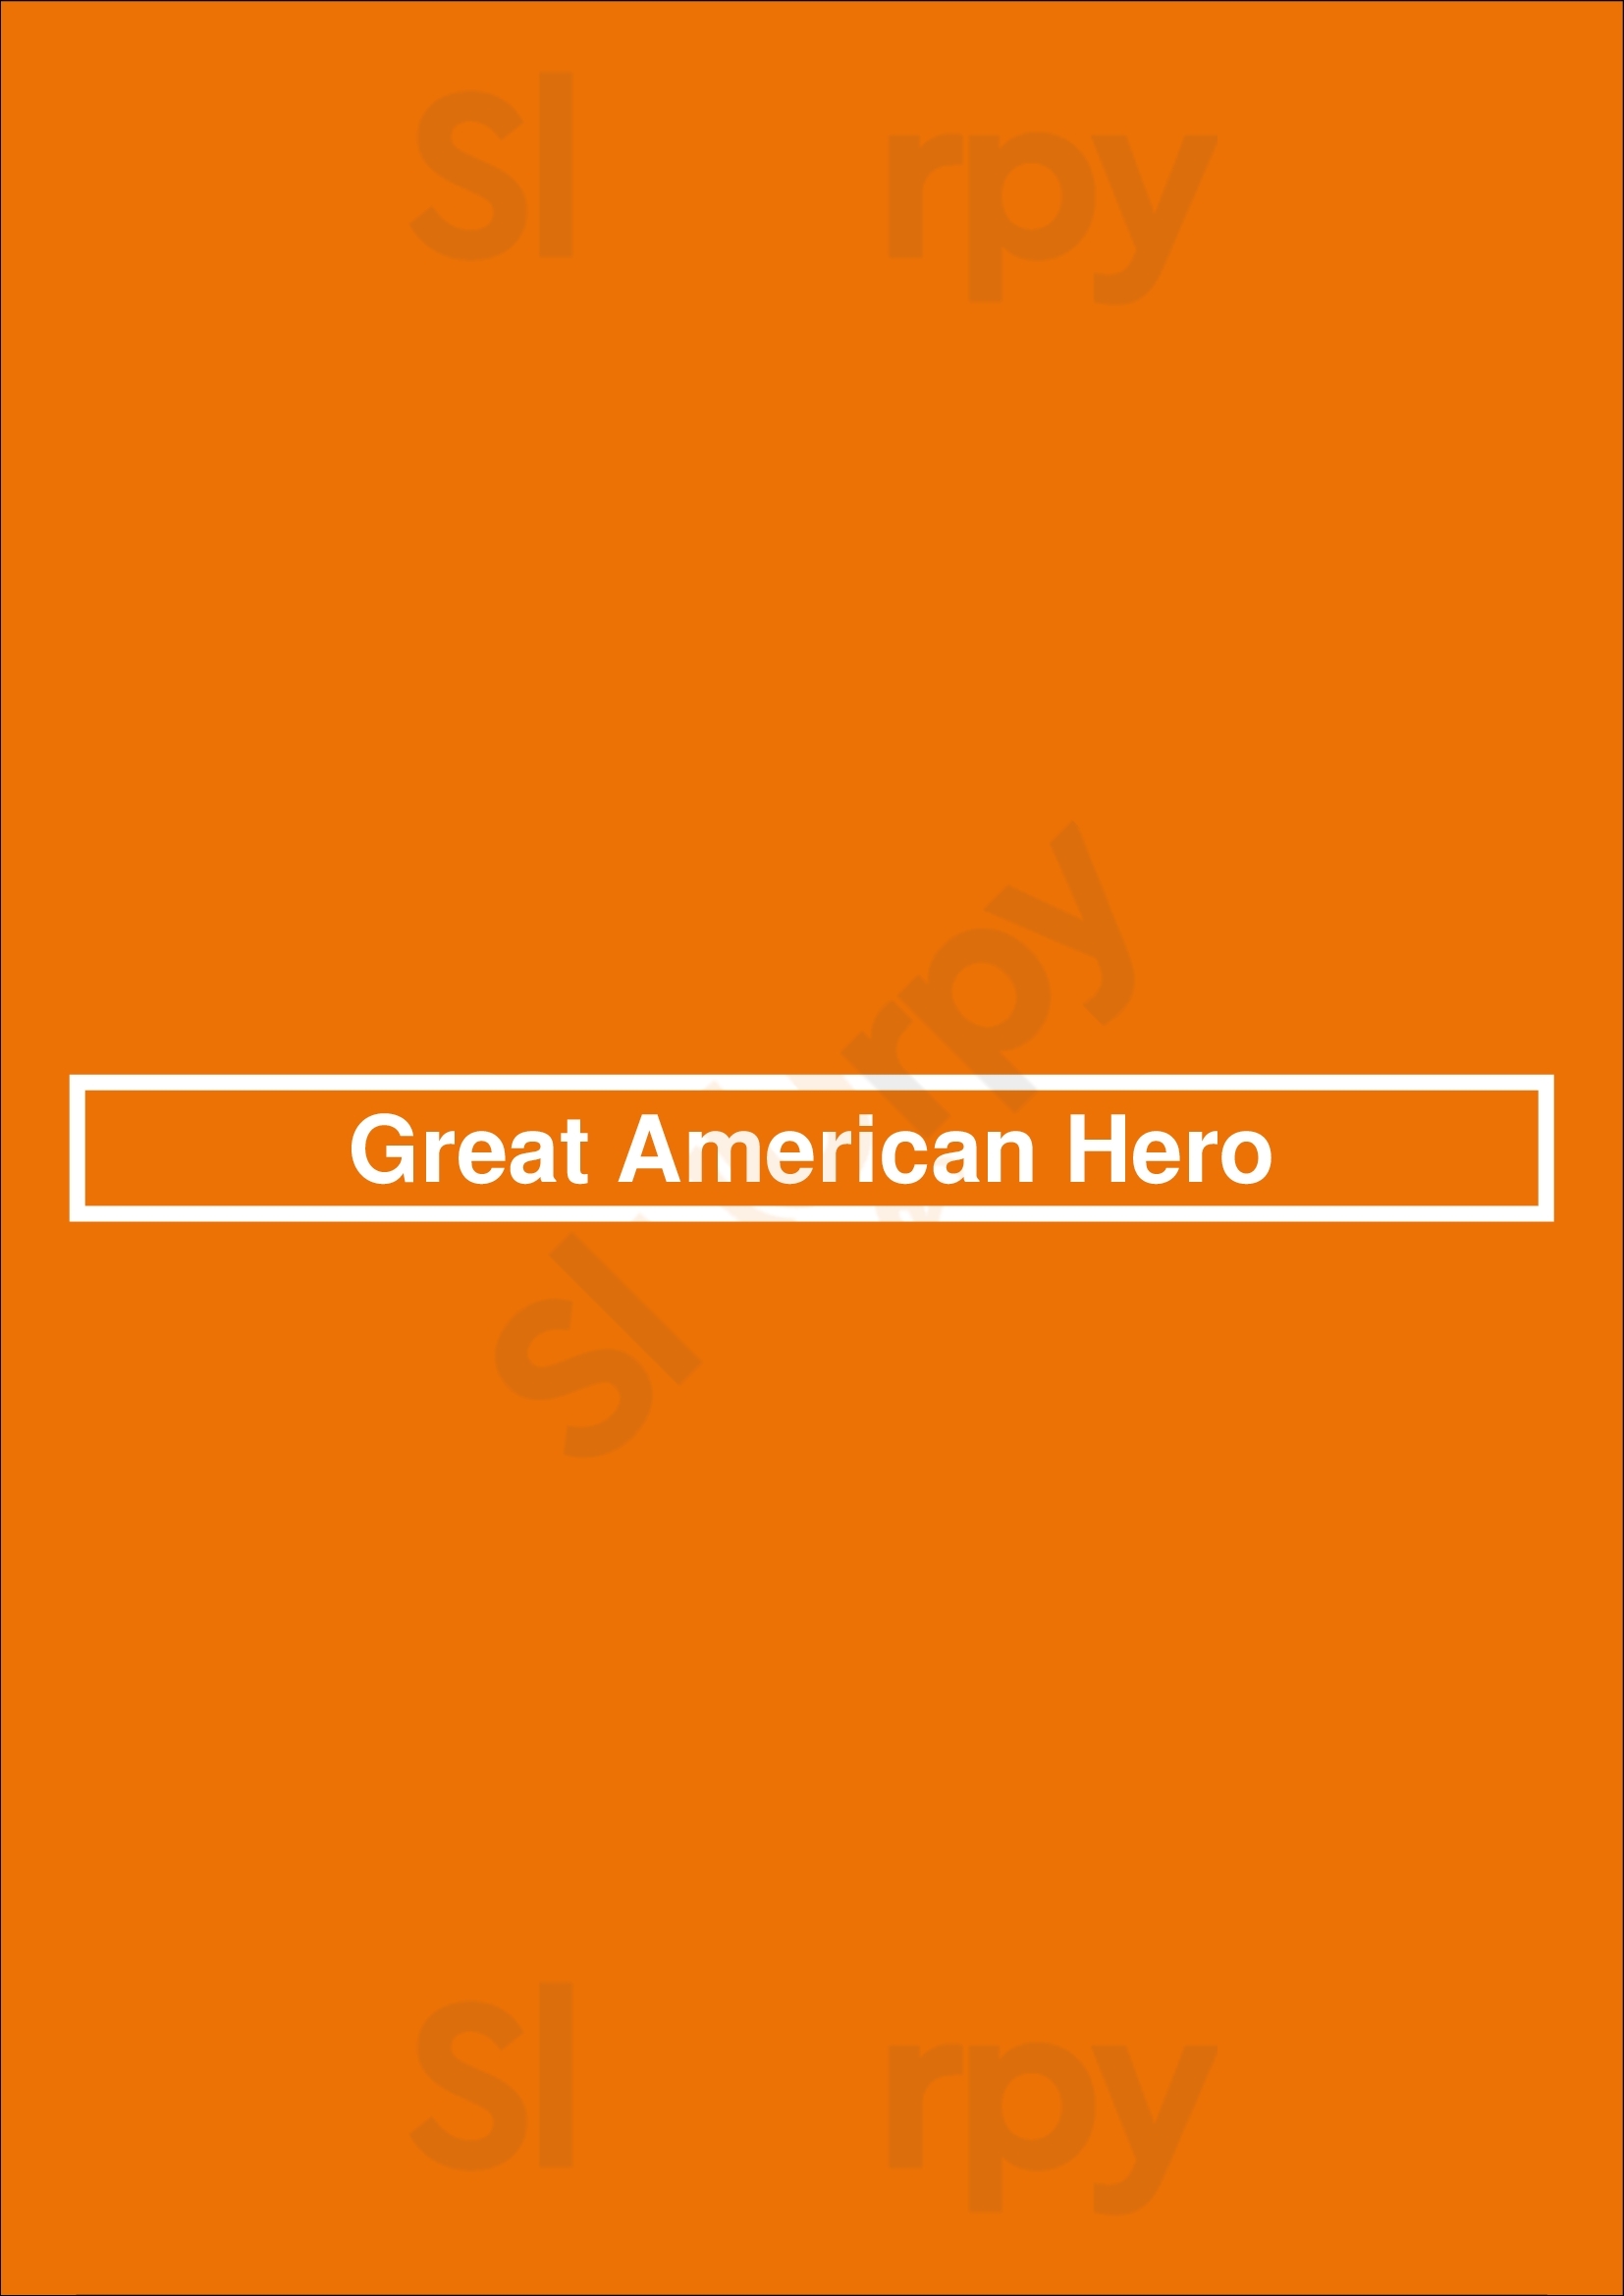 Great American Hero Dallas Menu - 1